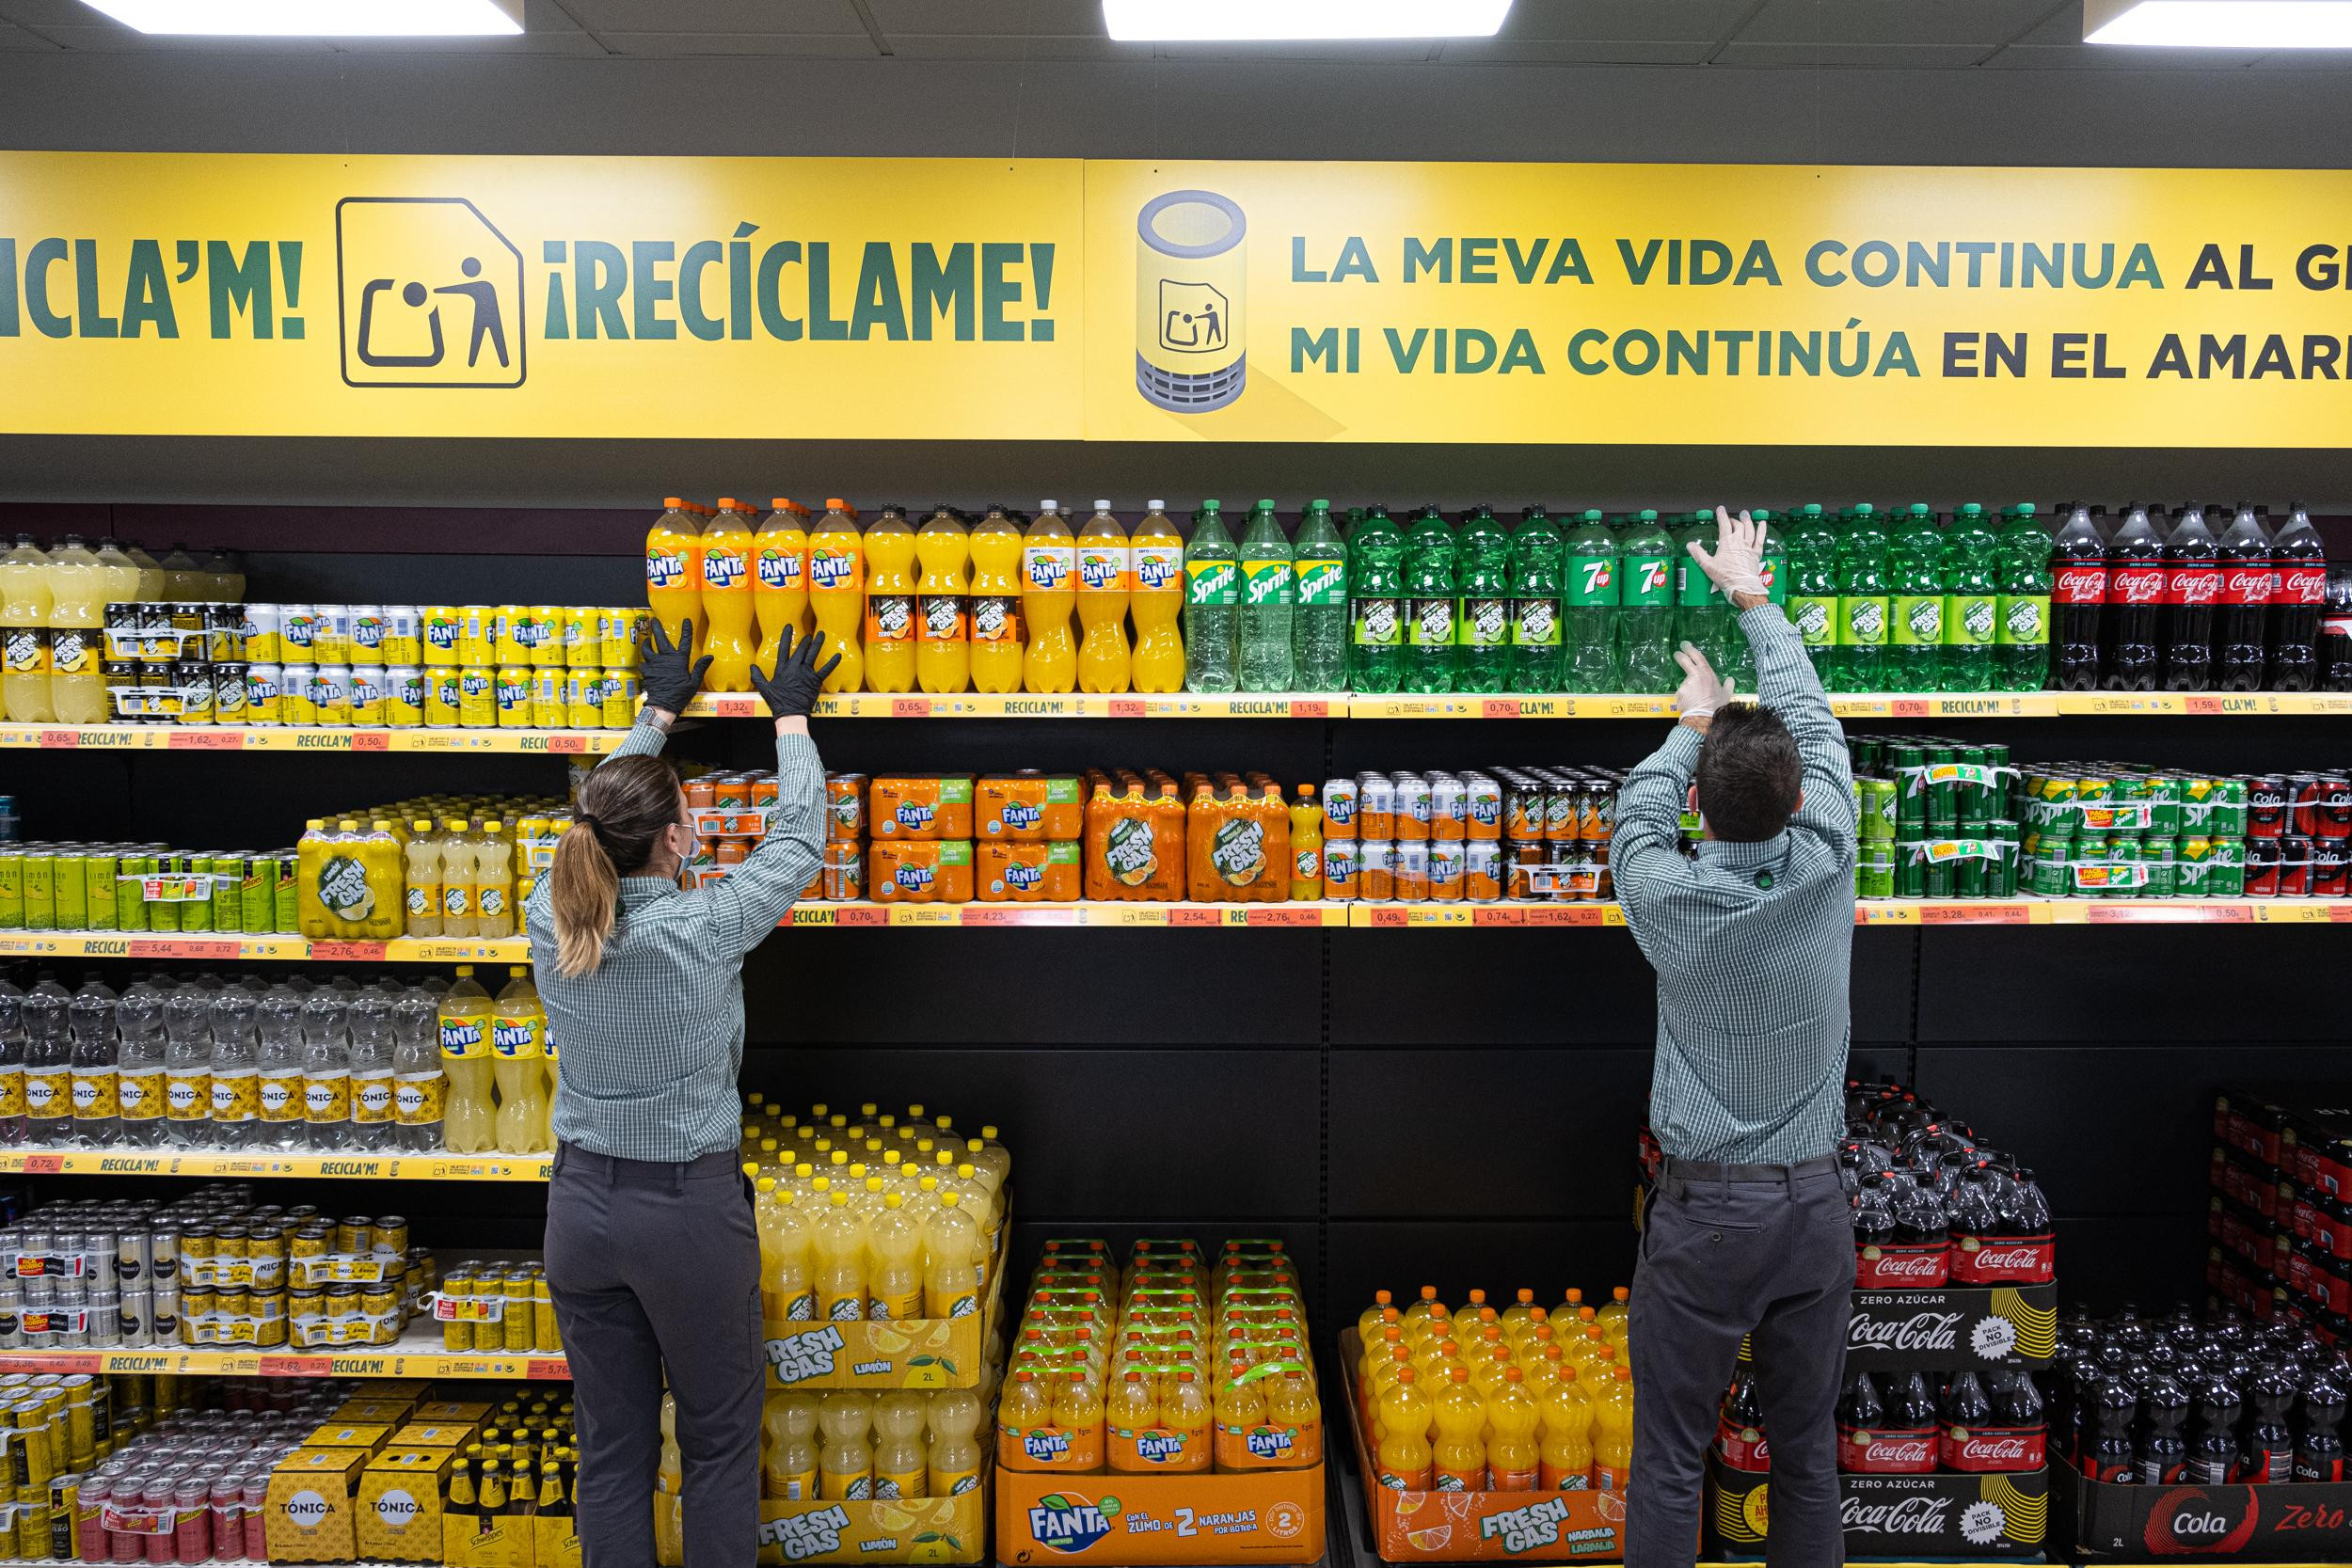 El supermercado 6.25 de Barcelona cuenta con cartelería indicativa sobre reciclaje / MERCADONA